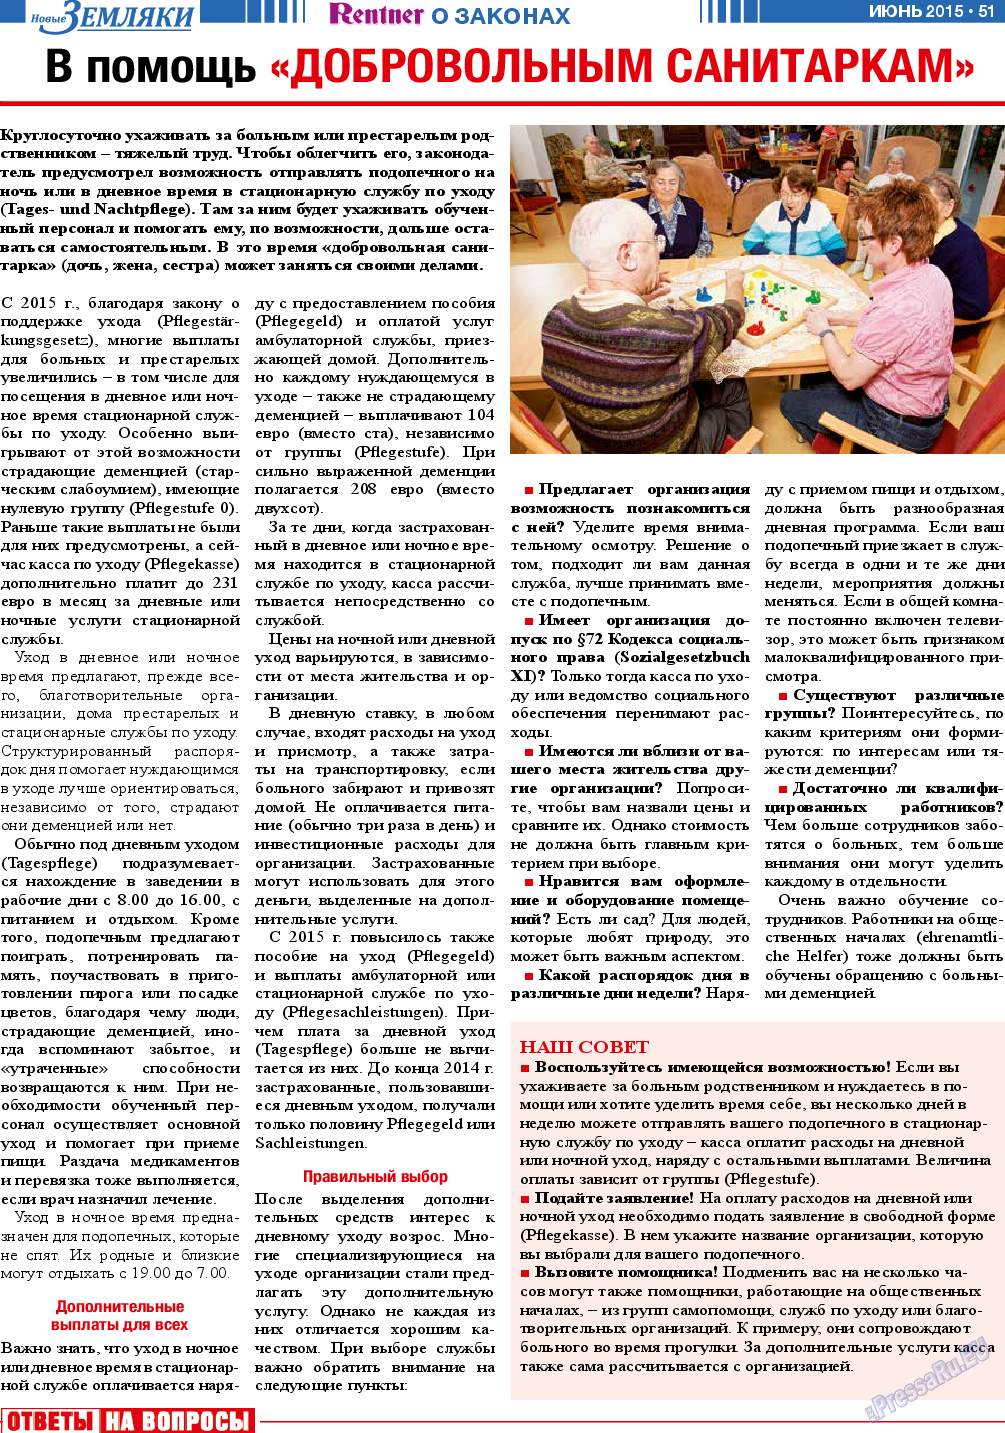 Новые Земляки, газета. 2015 №6 стр.51